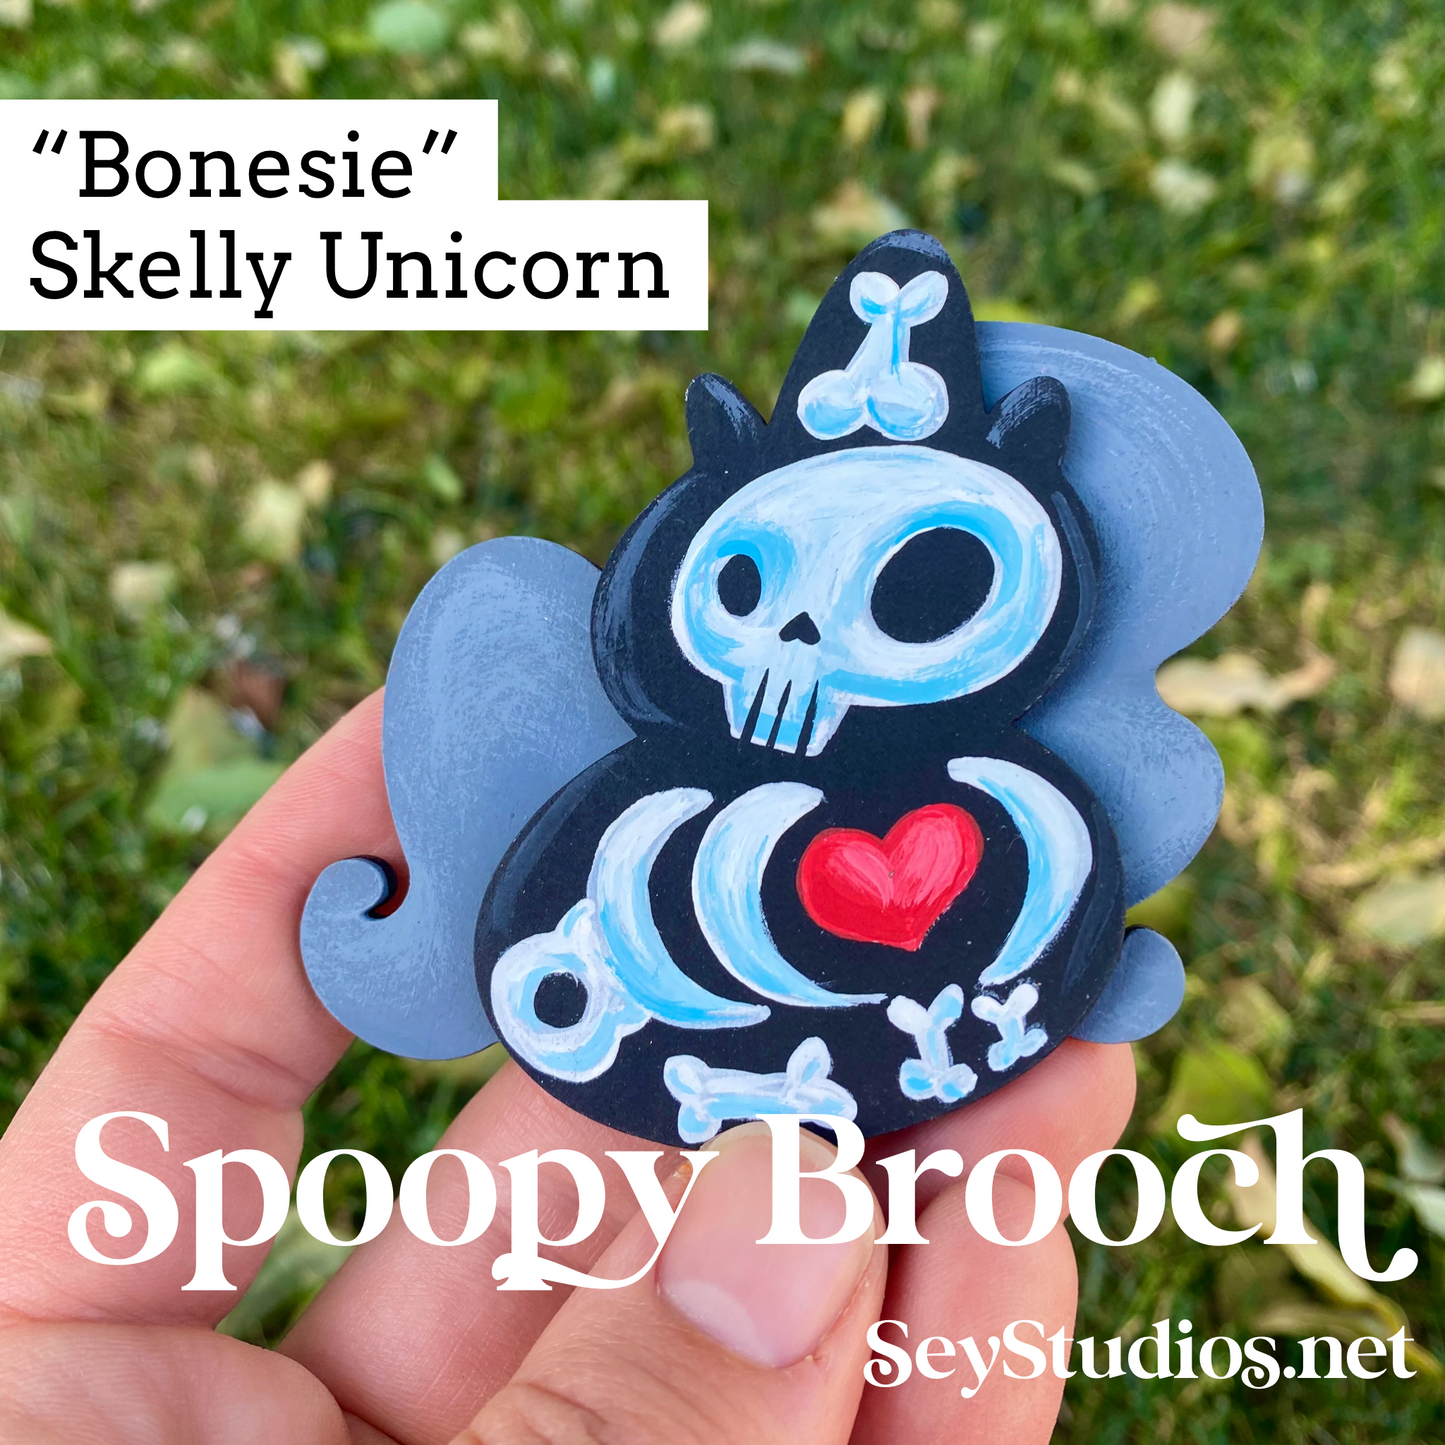 Brooch - “Bonesie, Skelly Unicorn”